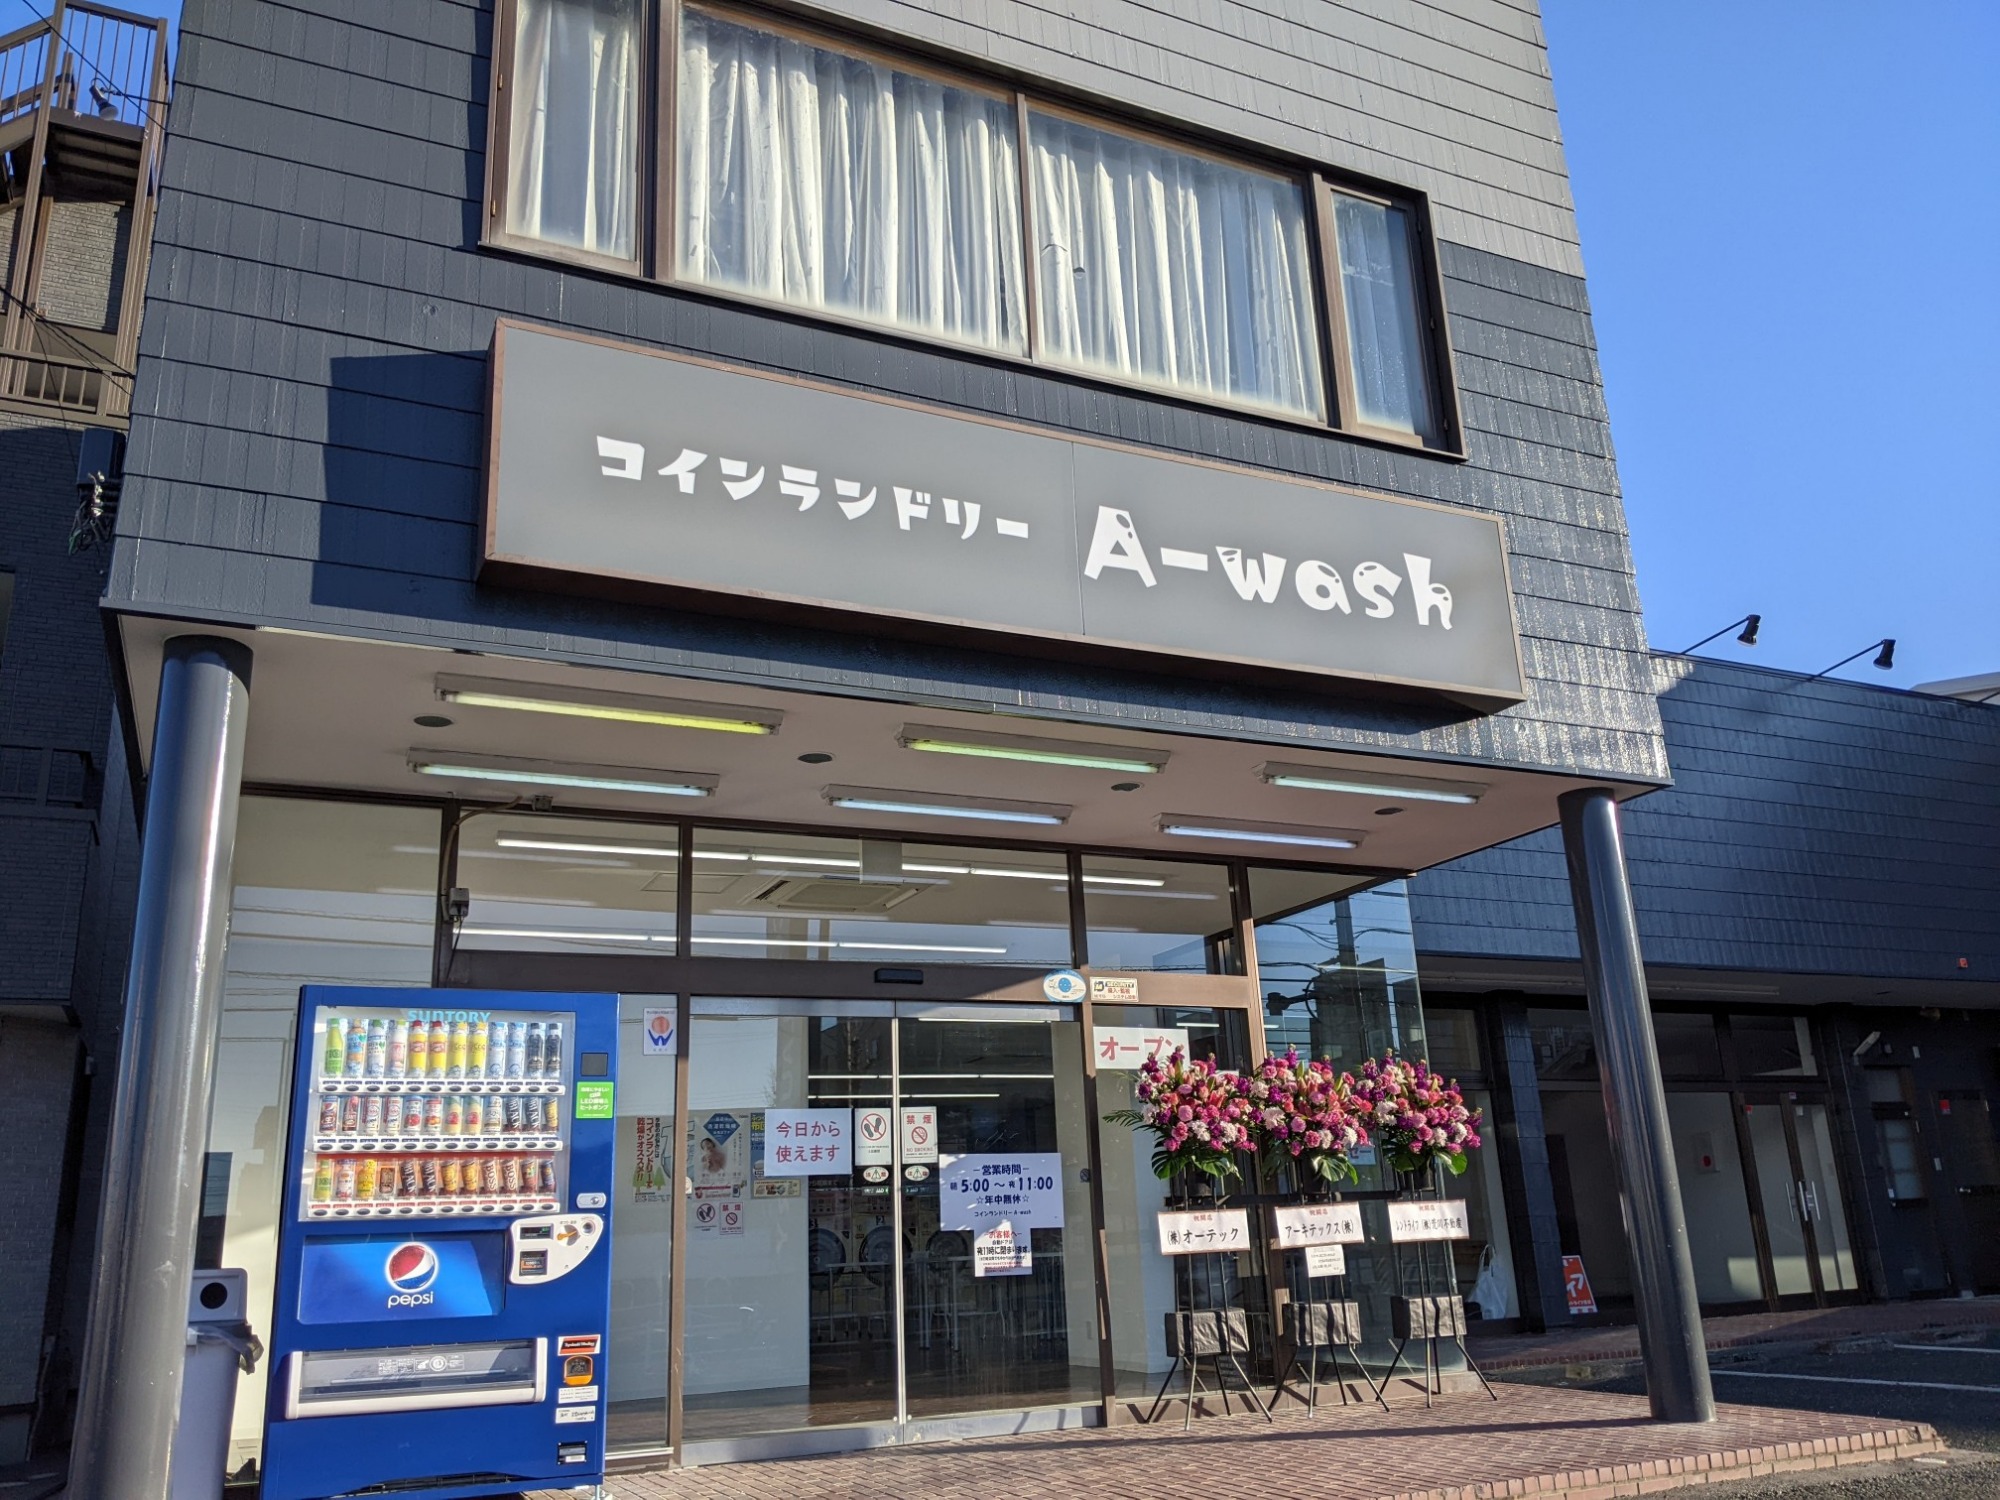 A-wash店